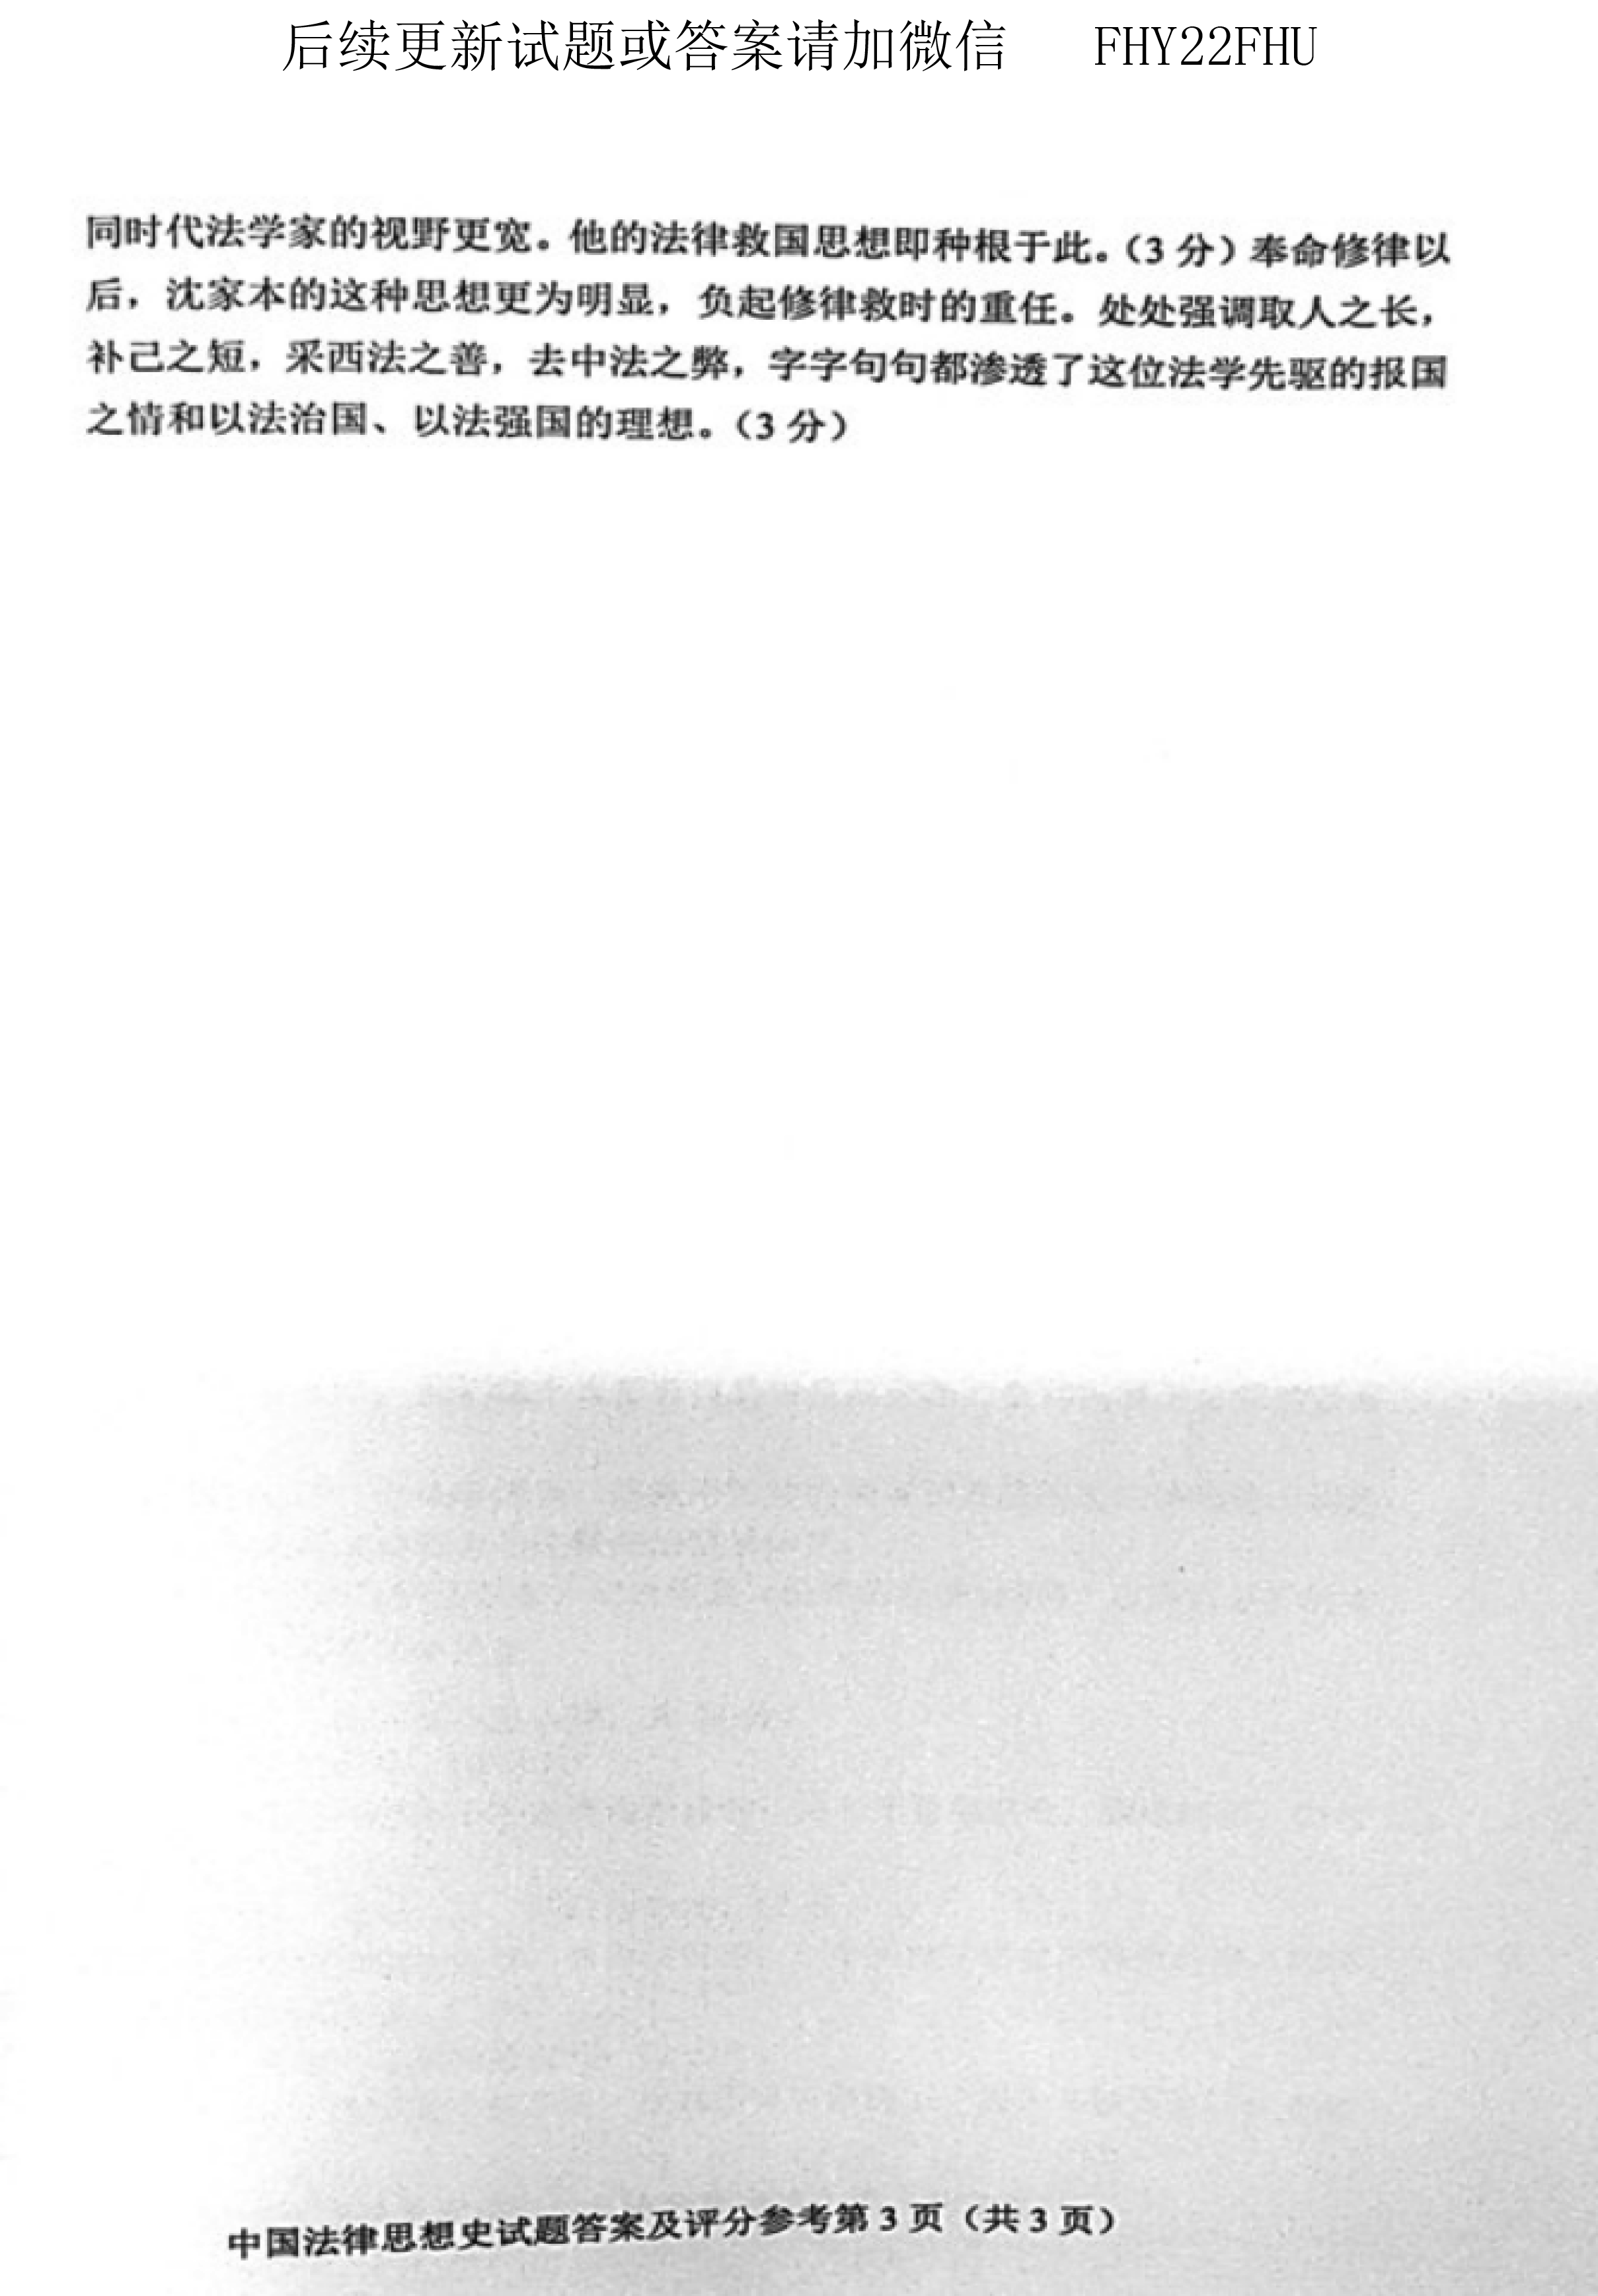 贵州省2020年08月自学考试00264中国法律思想史真题及答案